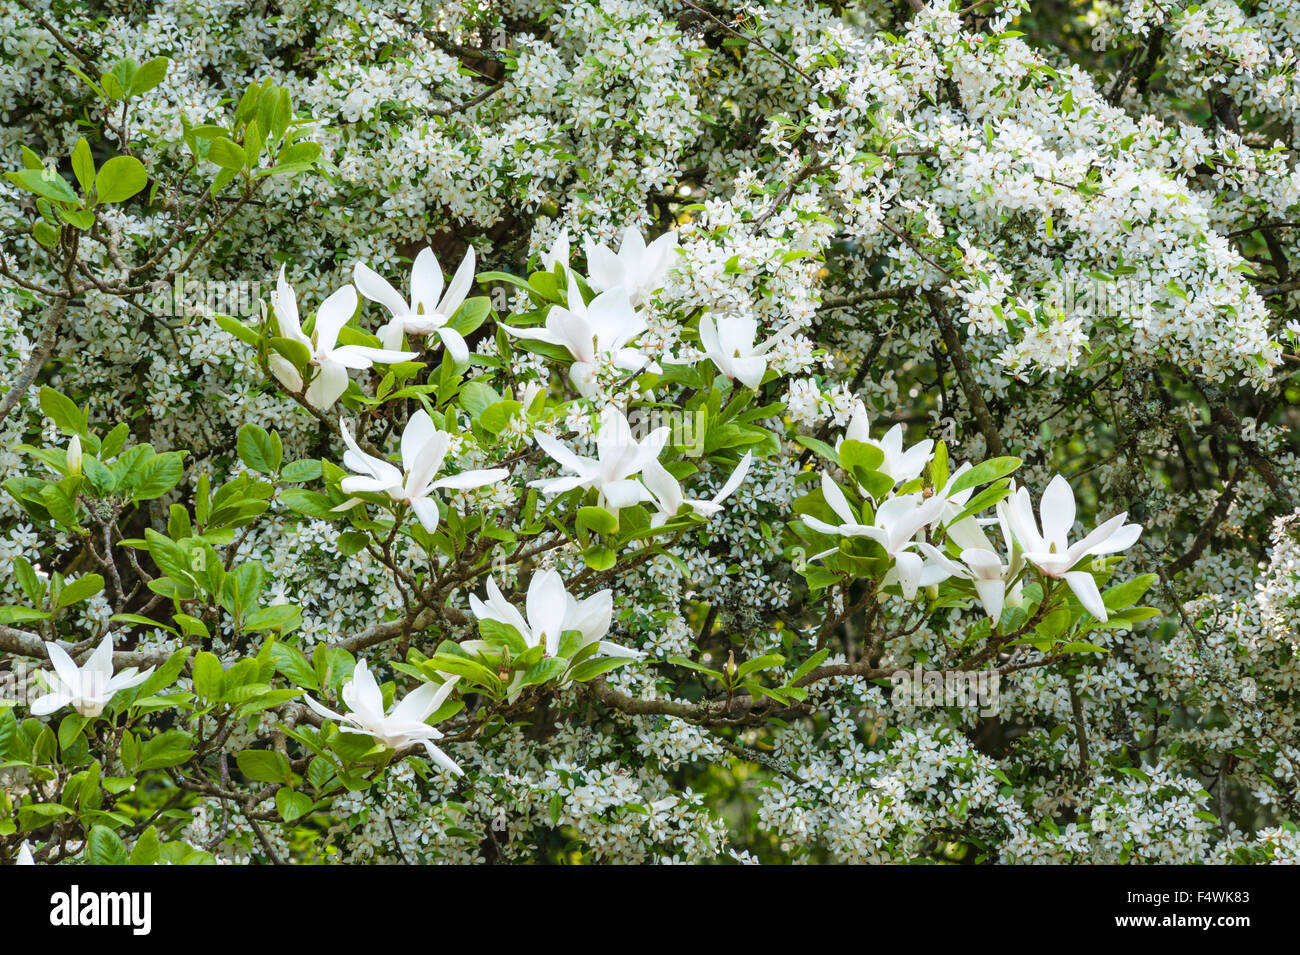 Jardin de Bodnant, Conwy, Pays de Galles, Royaume-Uni. Malus floribunda, Magnolia x soulangeana 'Amabilis' à la fin du printemps Banque D'Images